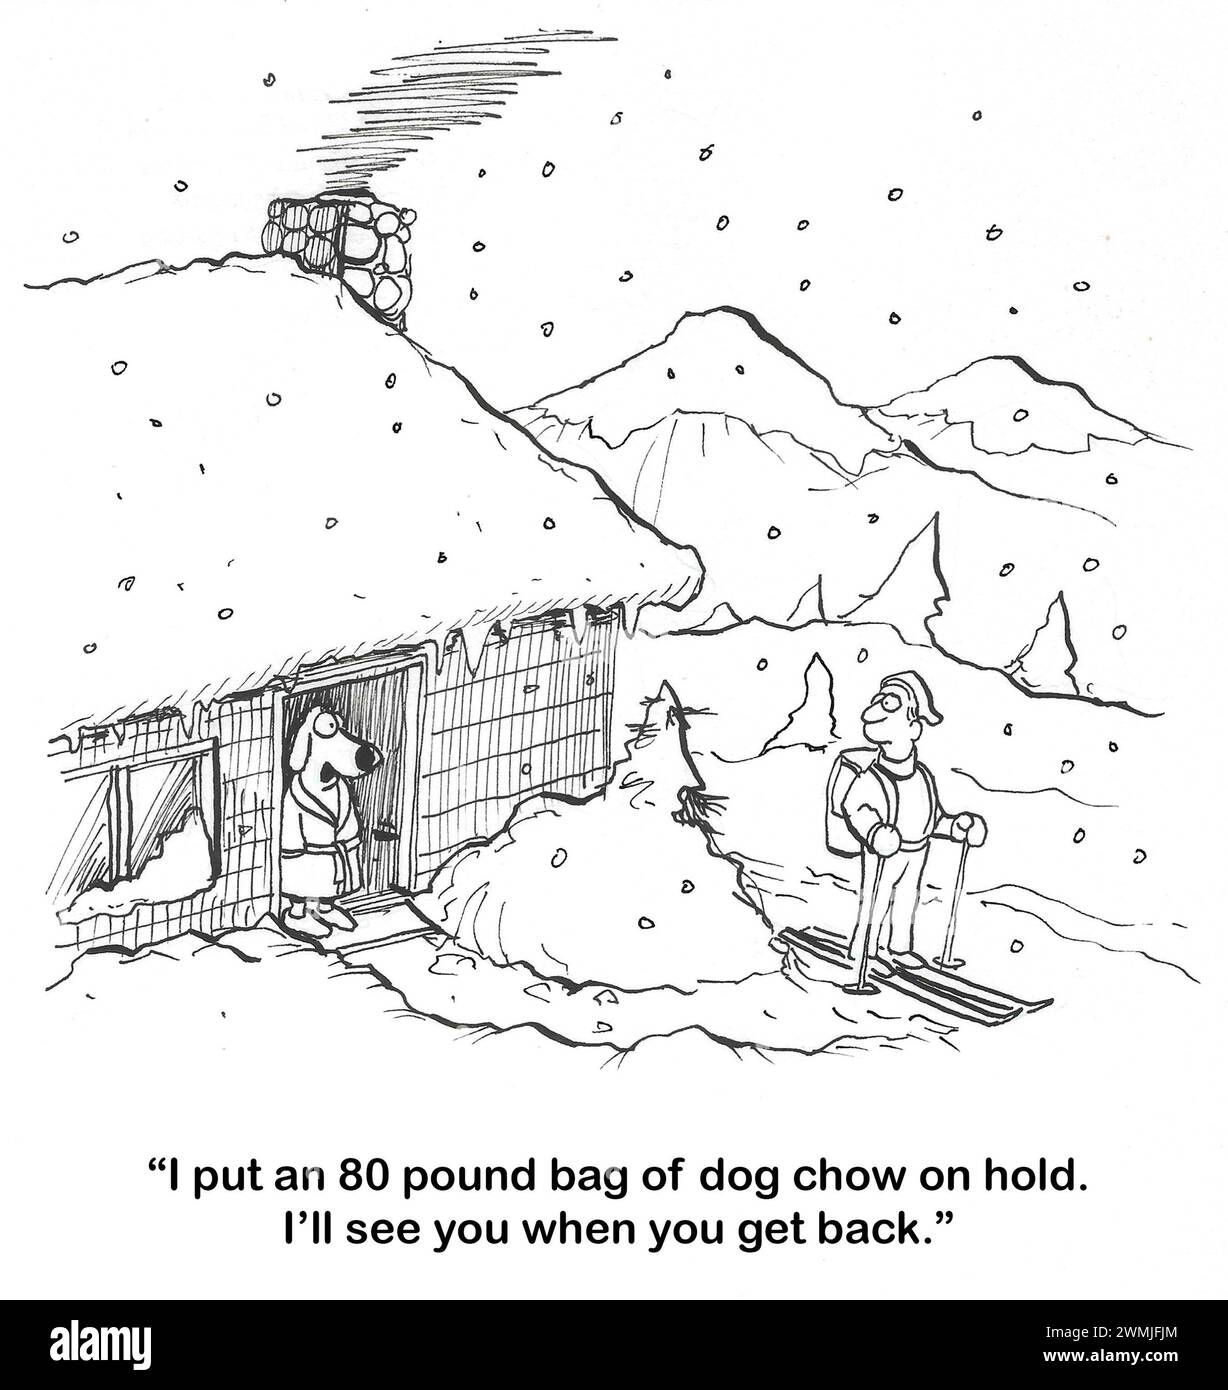 BW Cartoon eines Schneesturms und eines Hundes im Gewand, der mit seinem Besitzer spricht. Der Besitzer ist auf Skiern. Der Hund will 80 Pfund Chow zurückbringen. Stockfoto